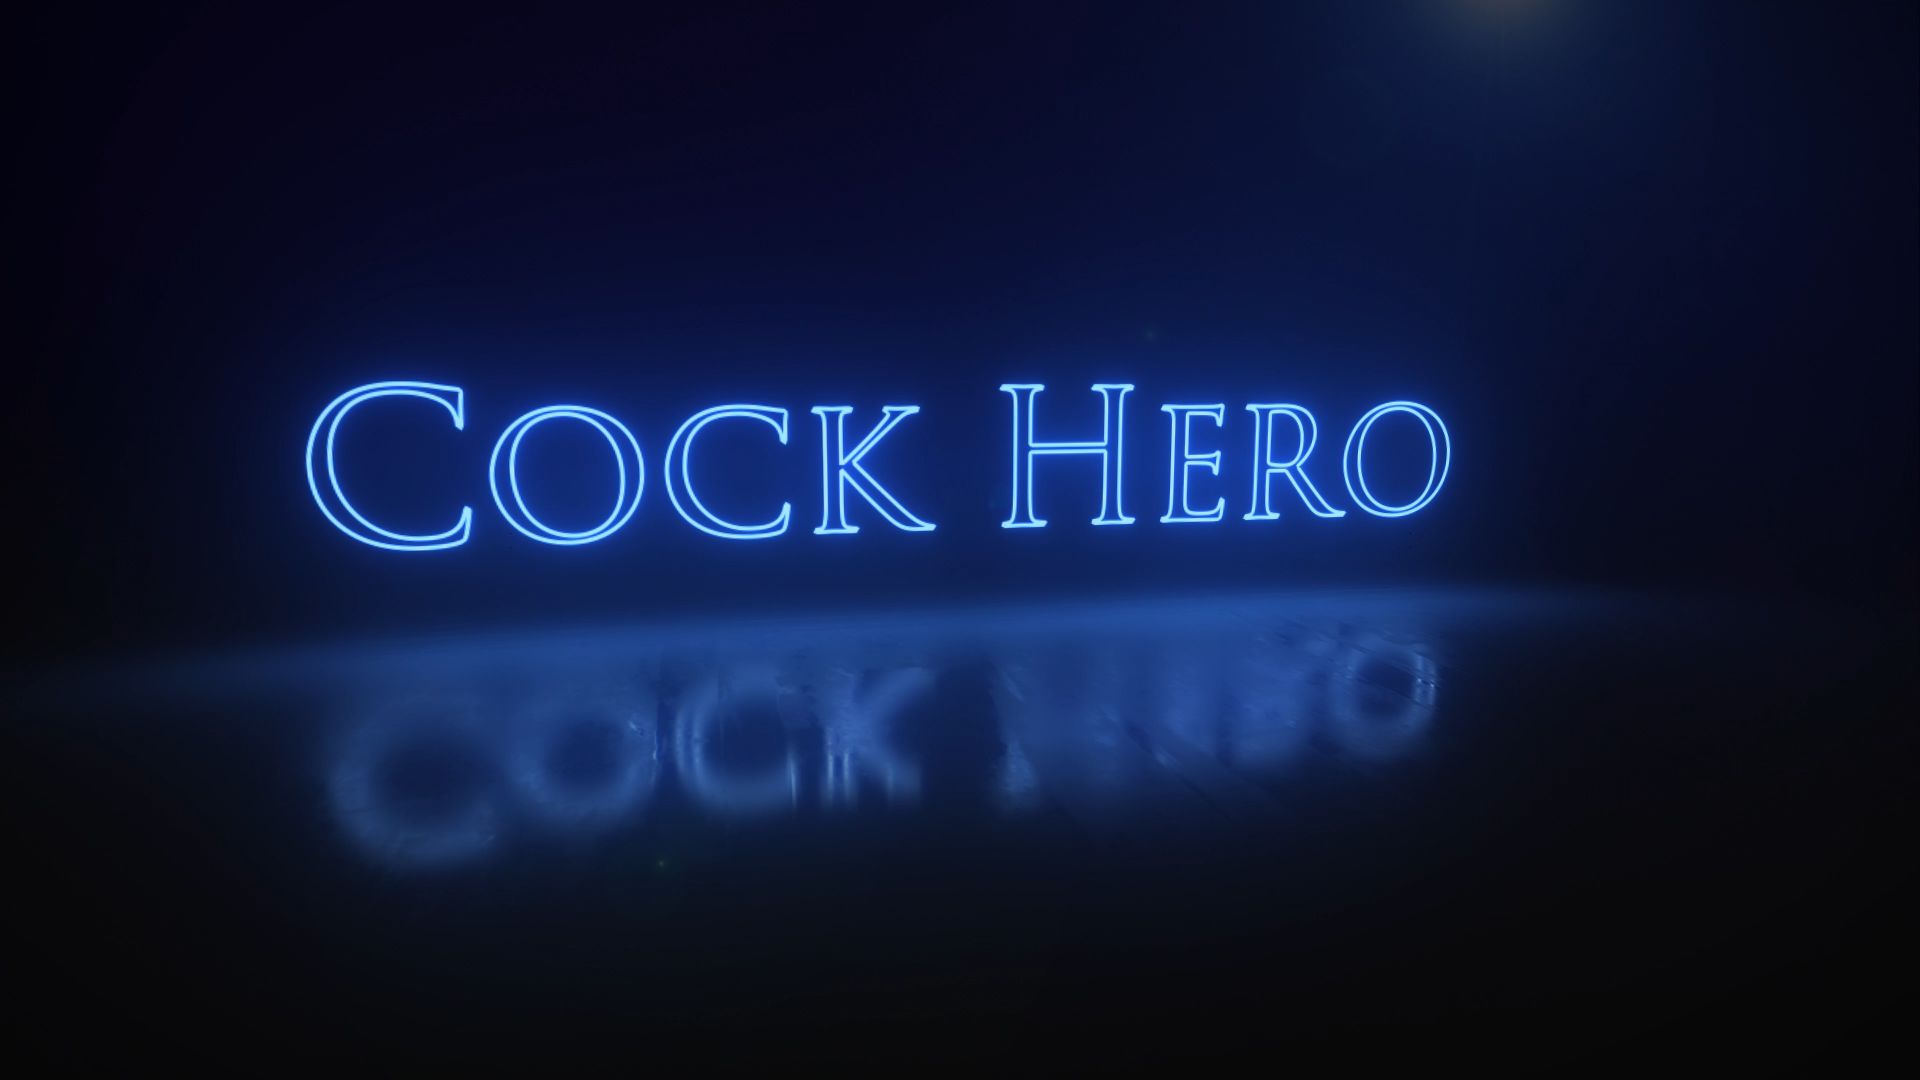 Cock hero gories fan images